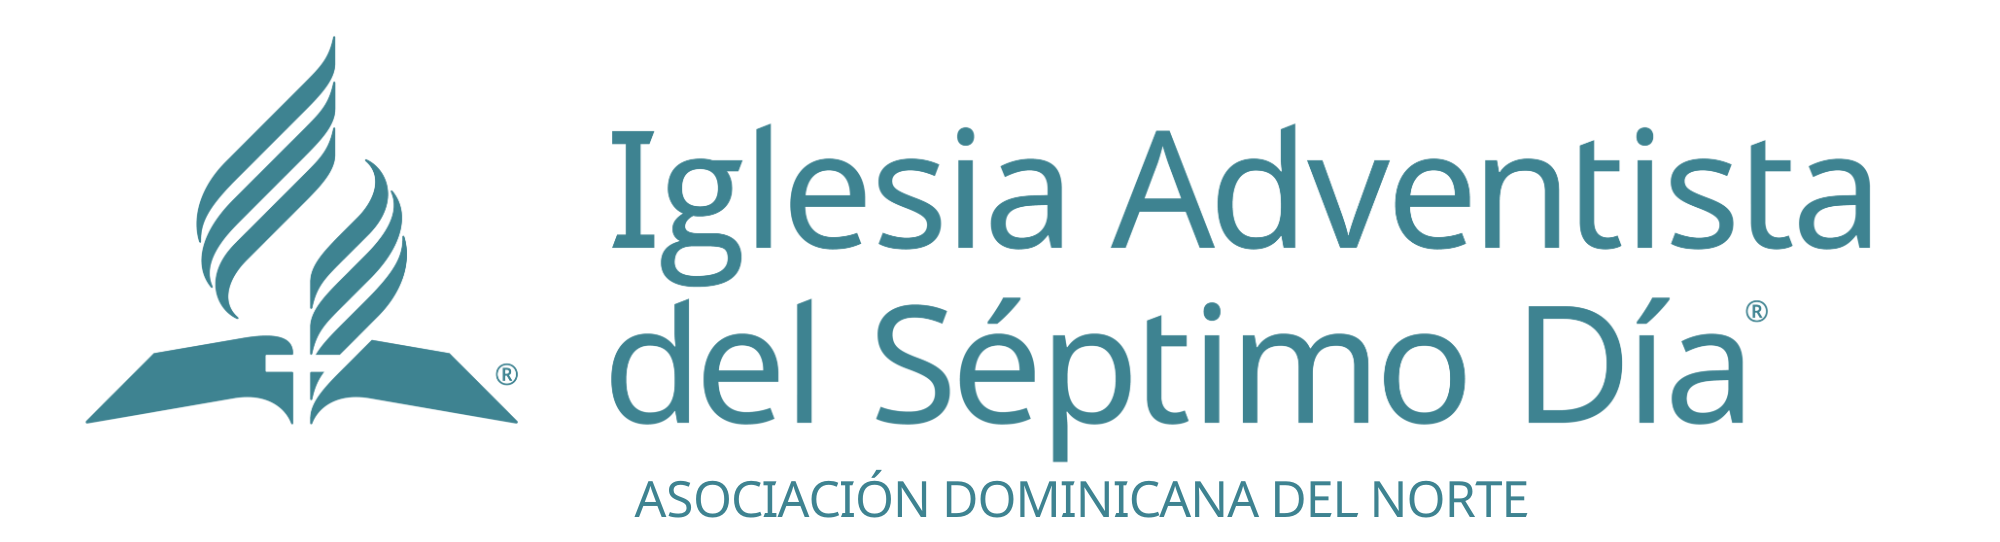 Asociación Dominicana del Norte